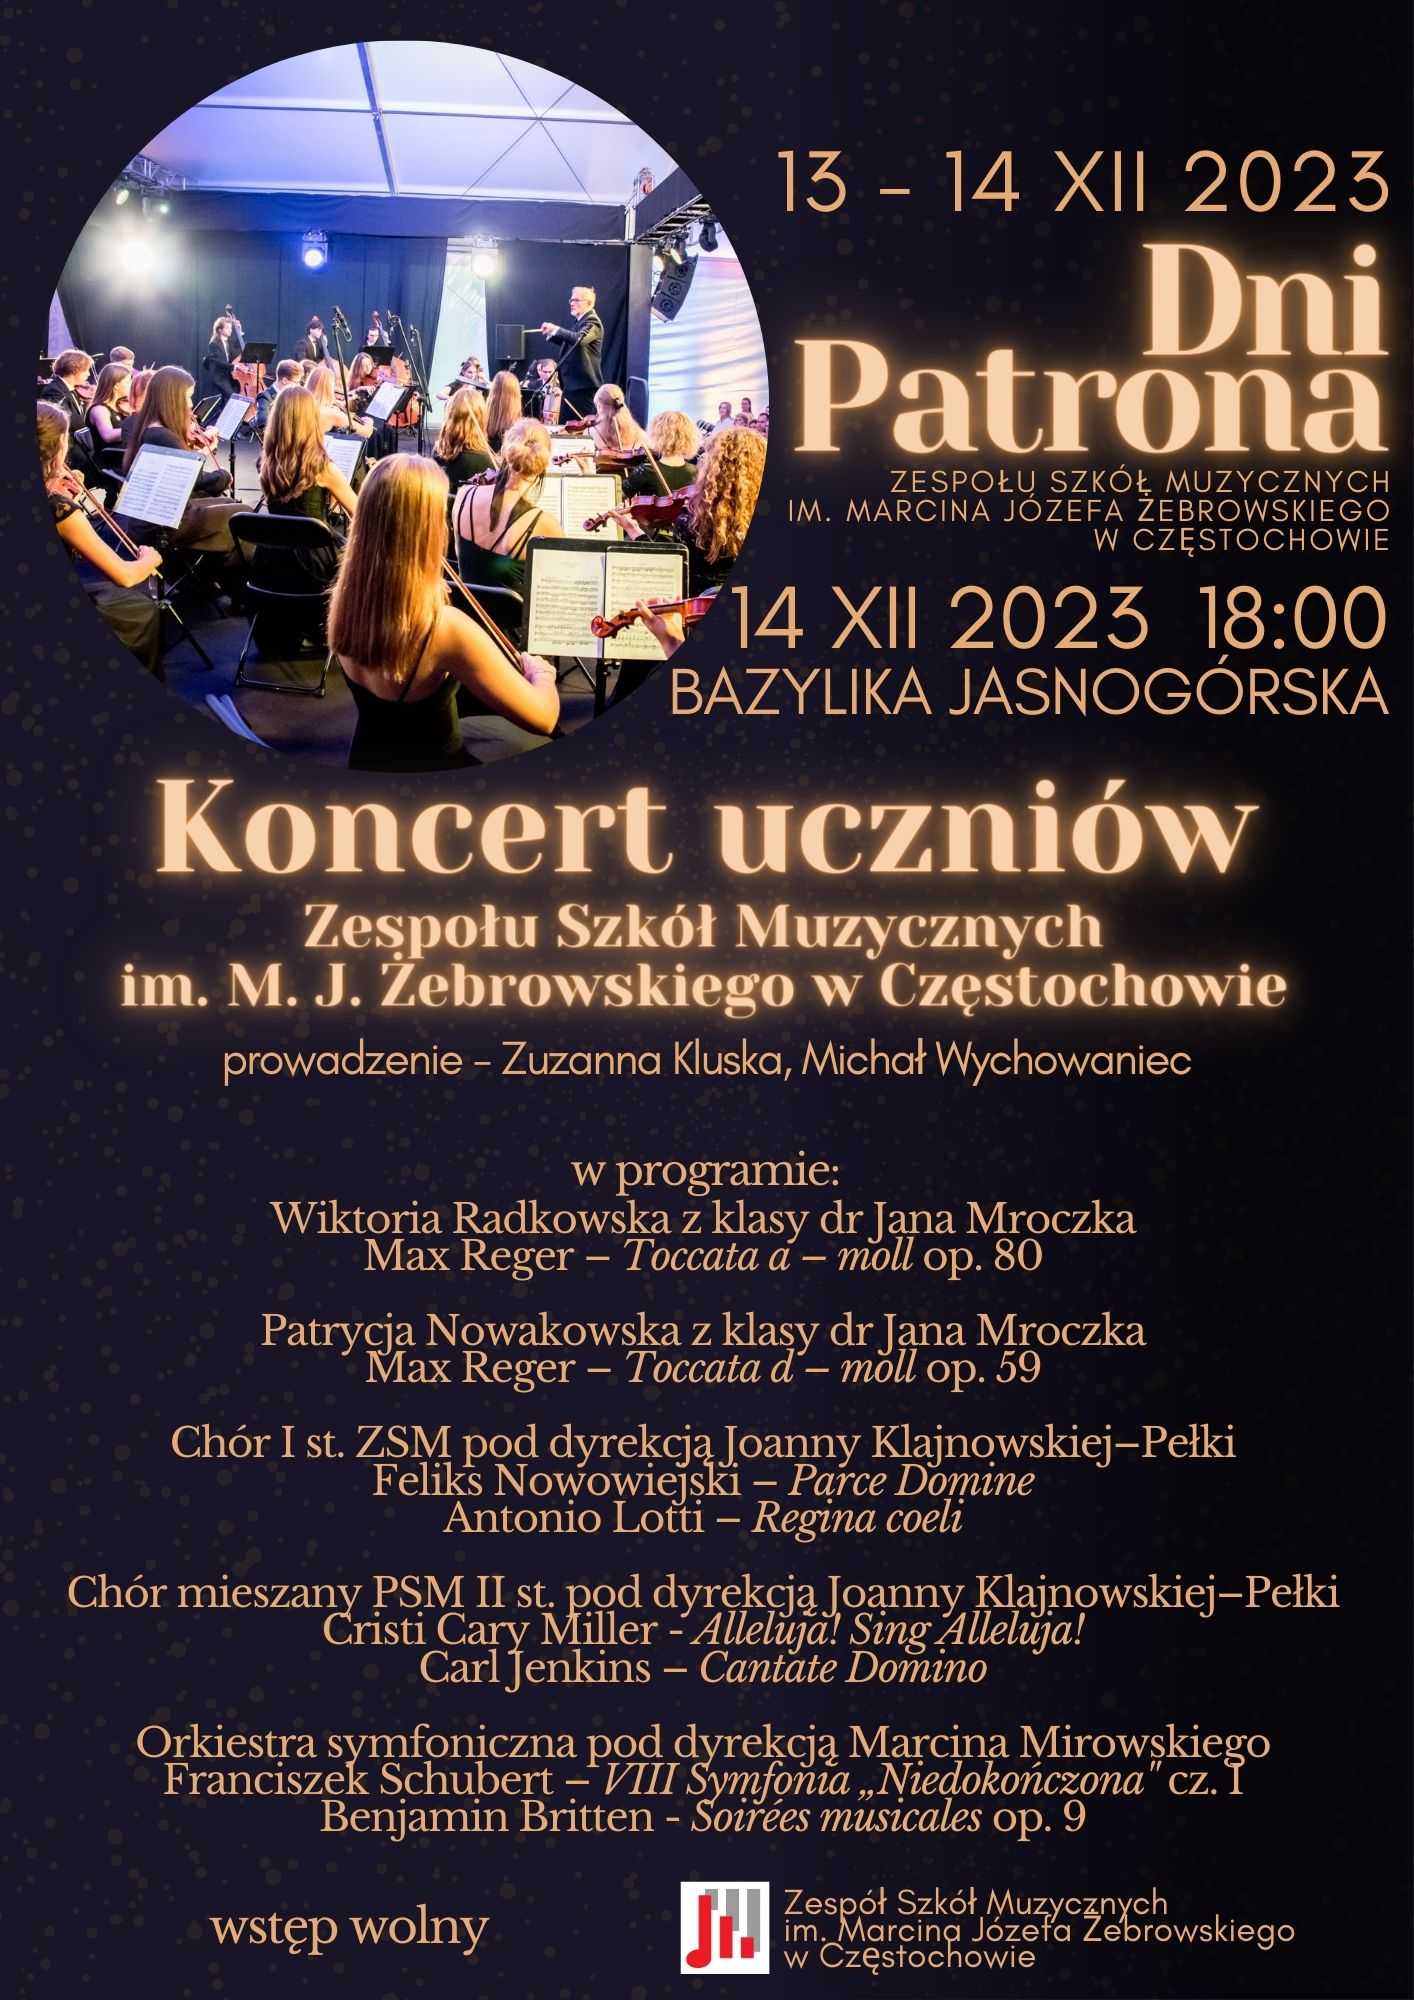 Czarne tło, w lewym górnym rogu zdjęcie orkiestry symfonicznej, informacje dotyczące koncertu uczniów ZSM w Bazylice Jasnogórskiej 14.12.2023 roku